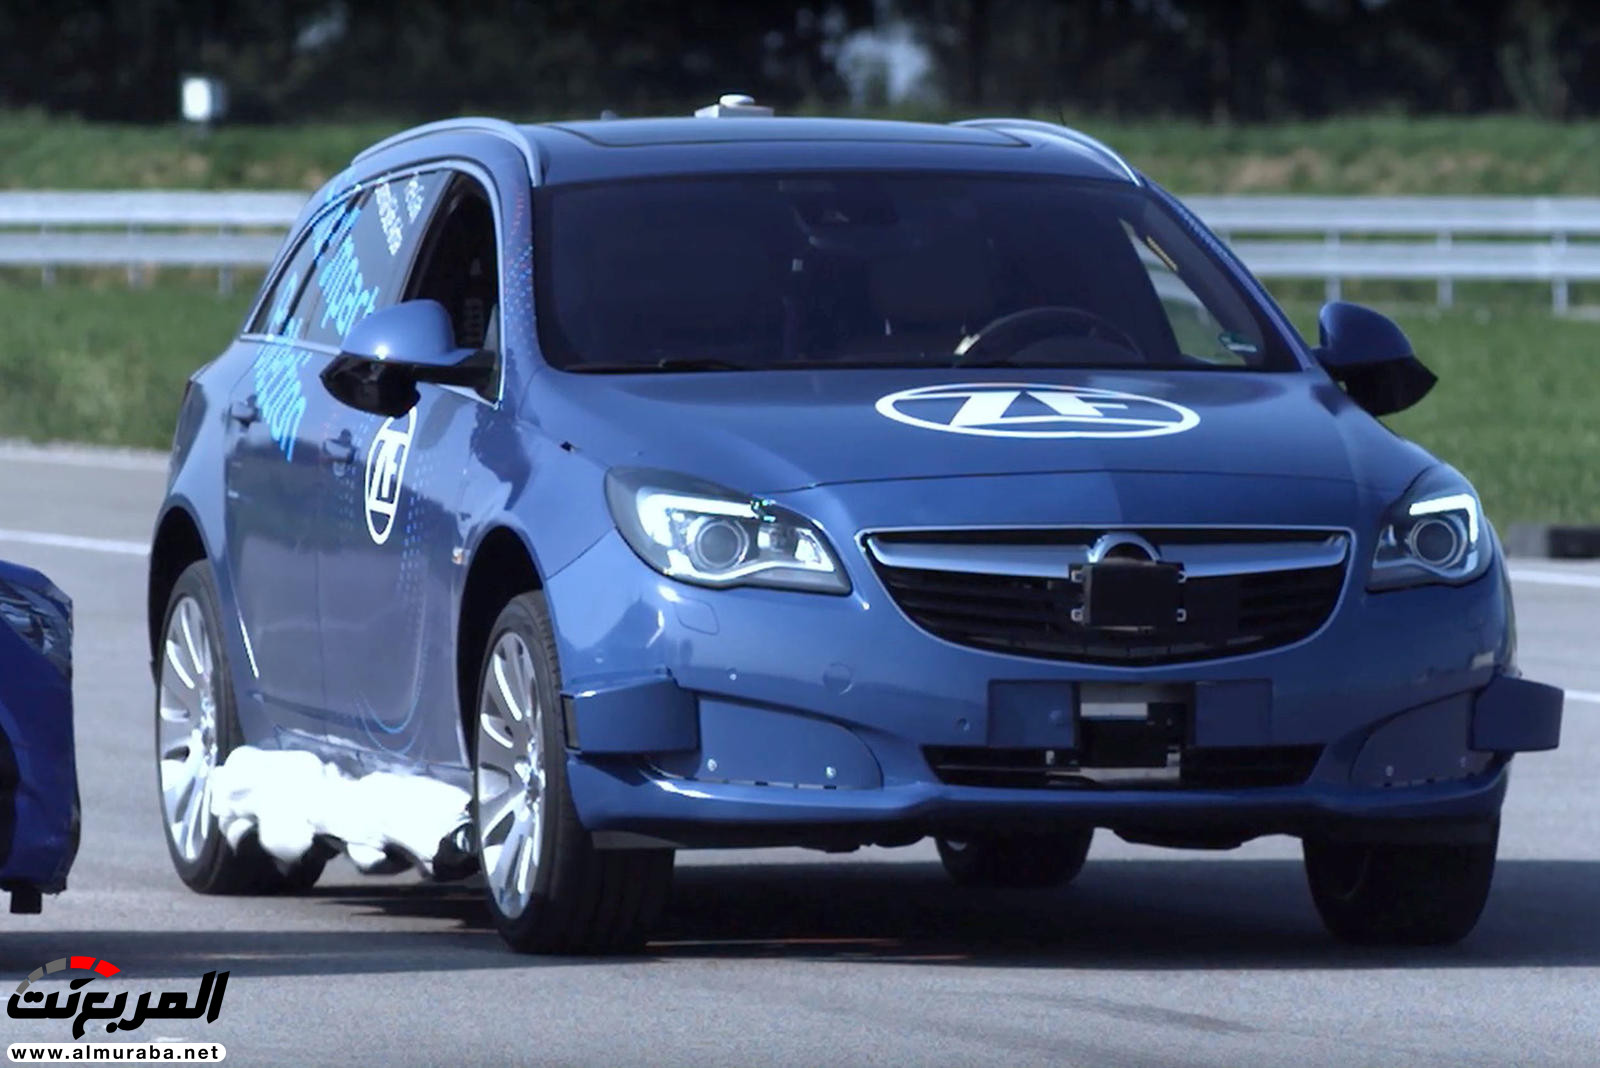 "بالفيديو والصور" شاهد كيف تعمل وسادة الهواء الخارجية القادمة للسيارات 4